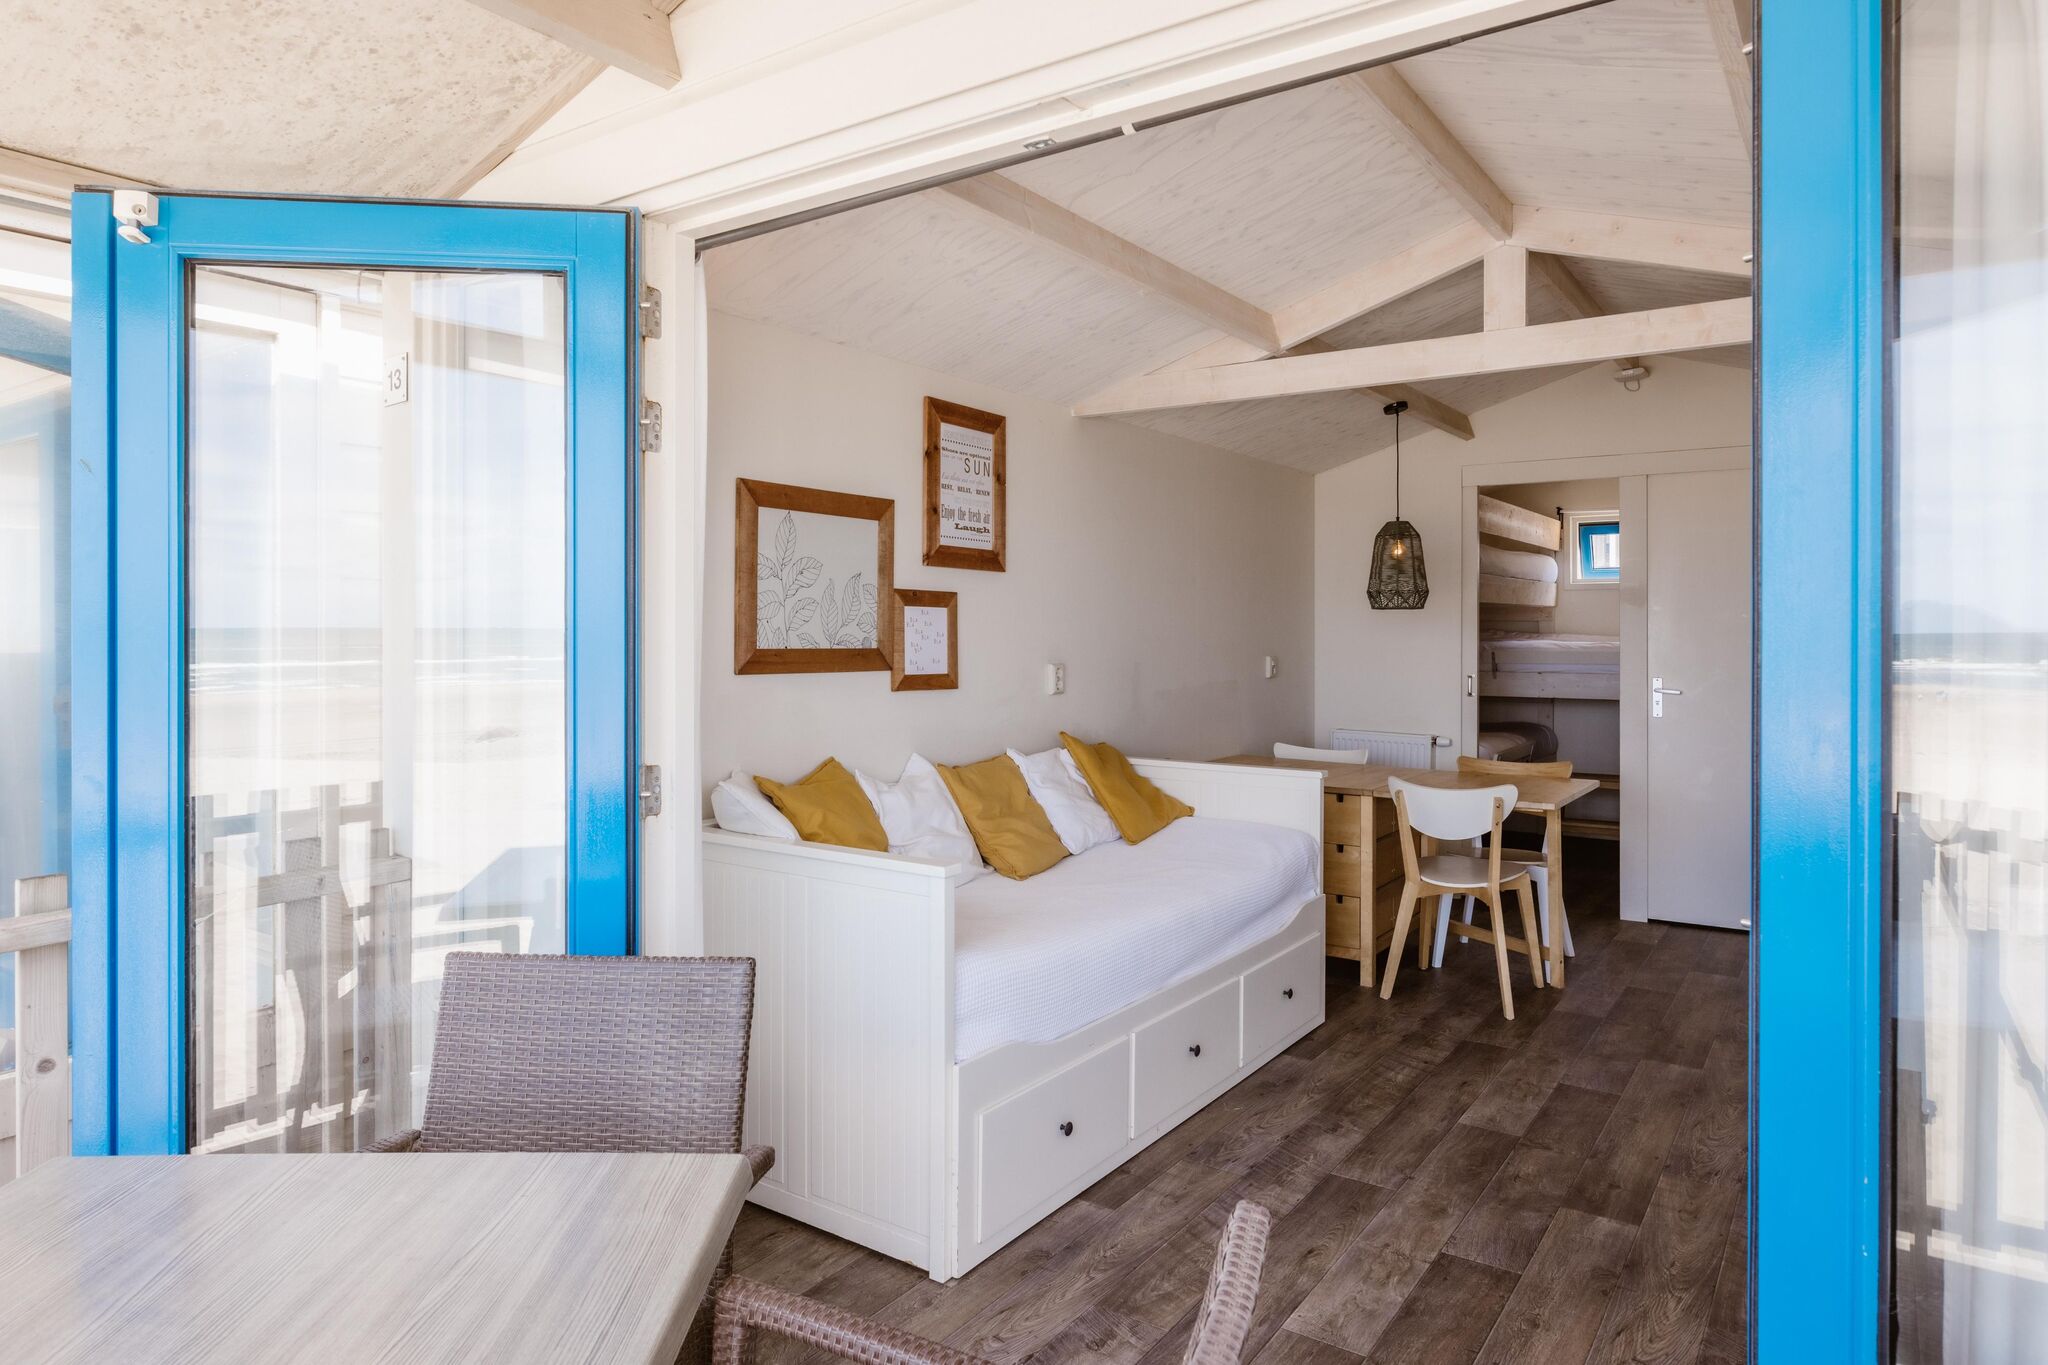 Mooi gelegen vakantiehuis, direct op het Noordzeestrand van Wijk aan Zee